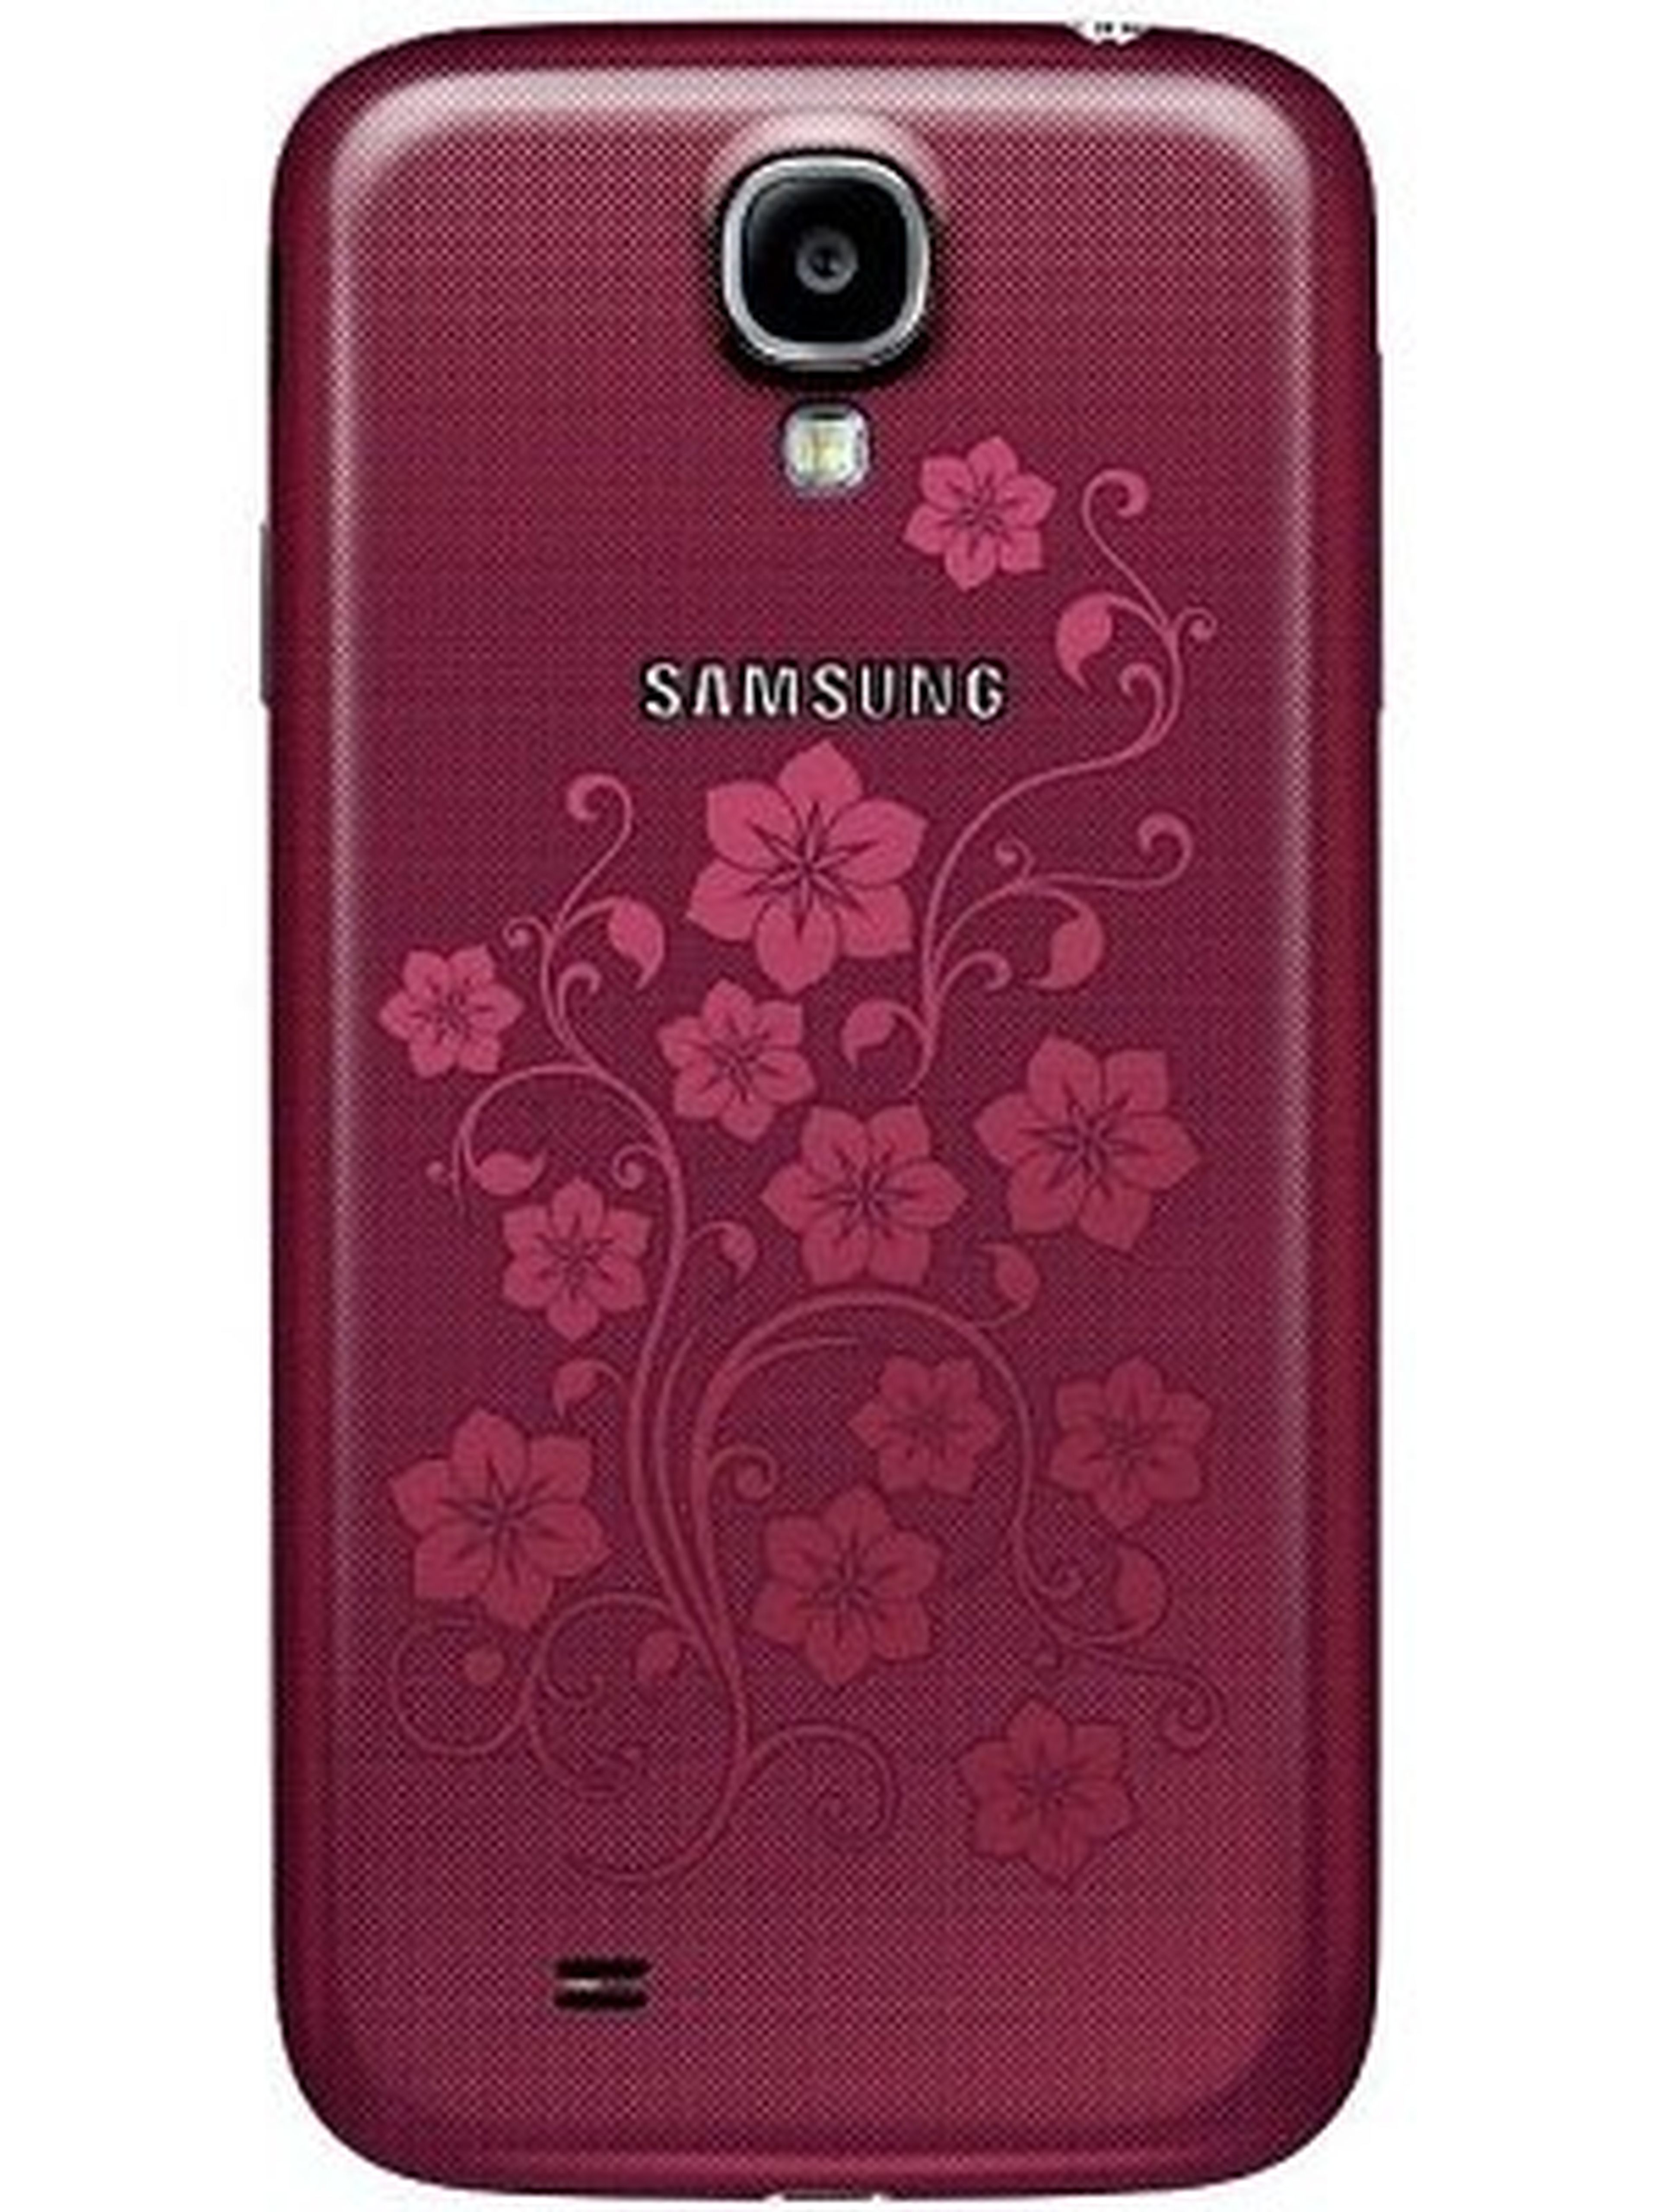 Nueva edición del Samsung Galaxy S4 La Fleur, en color rojo